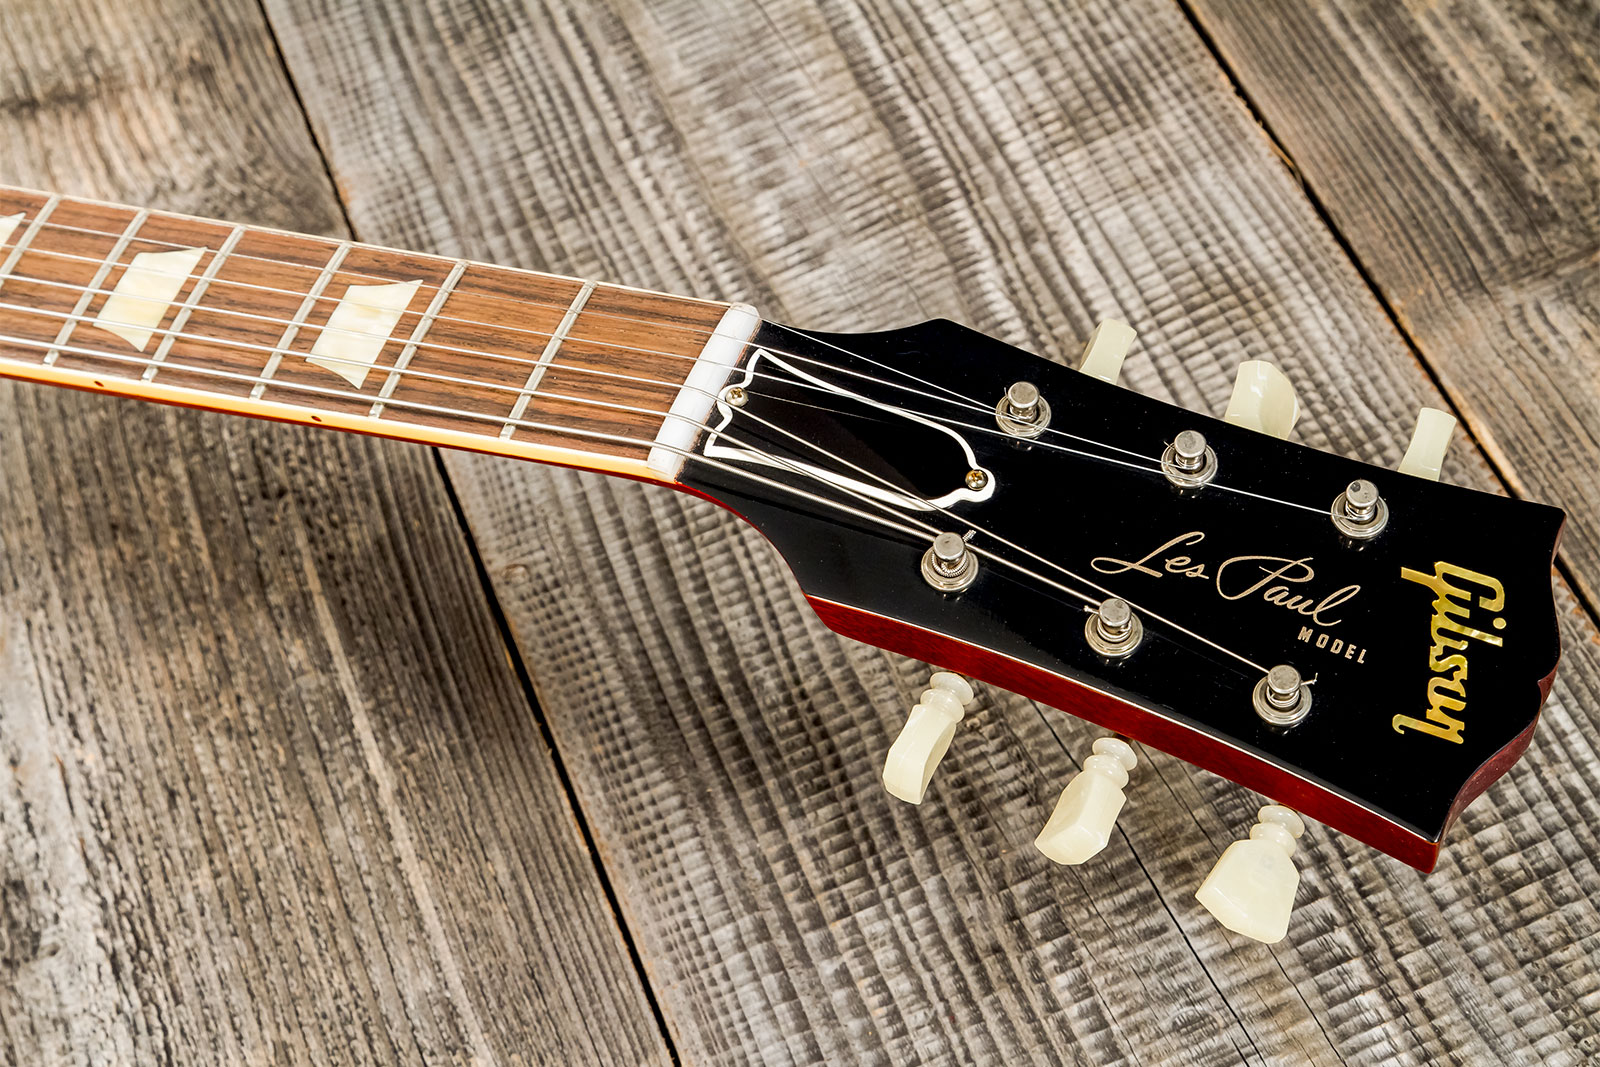 Gibson Custom Shop Les Paul Standard 1960 Reissue Lh Gaucher 2h Ht Rw #09122 - Vos Tangerine Burst - Guitarra electrica para zurdos - Variation 7